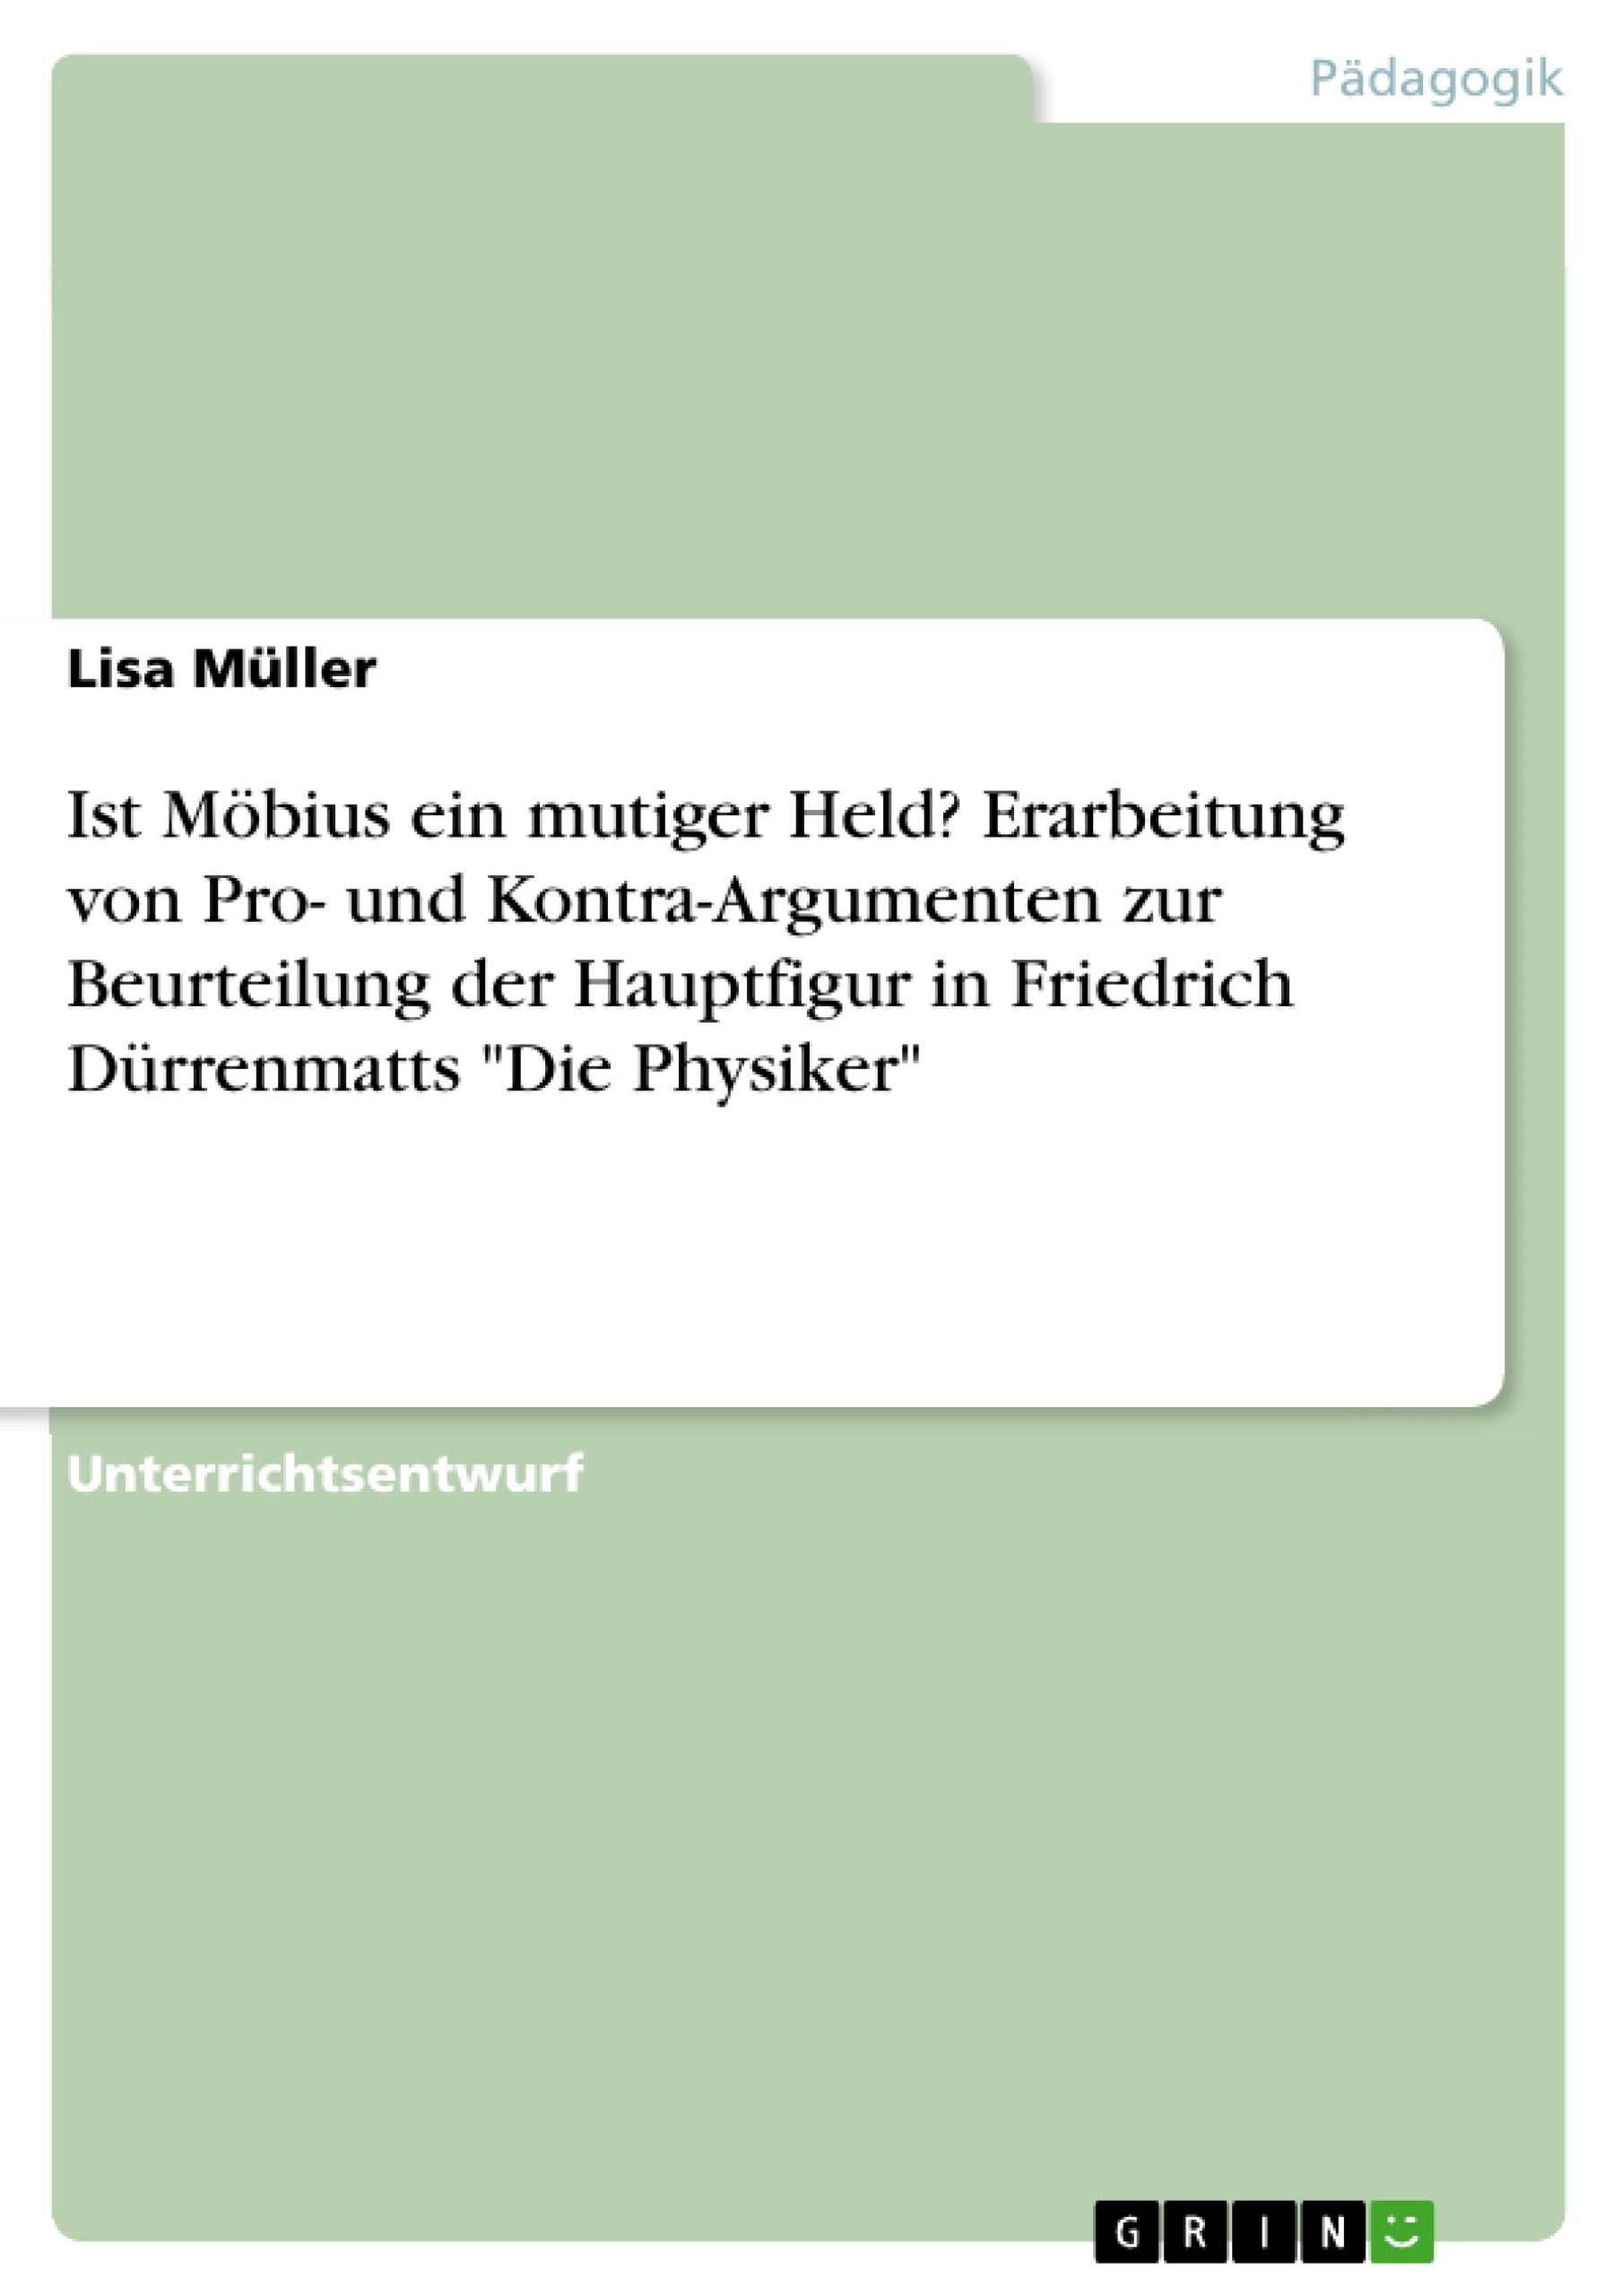 Title: Ist Möbius ein mutiger Held? Erarbeitung von Pro- und Kontra-Argumenten zur Beurteilung der Hauptfigur in Friedrich Dürrenmatts "Die Physiker"